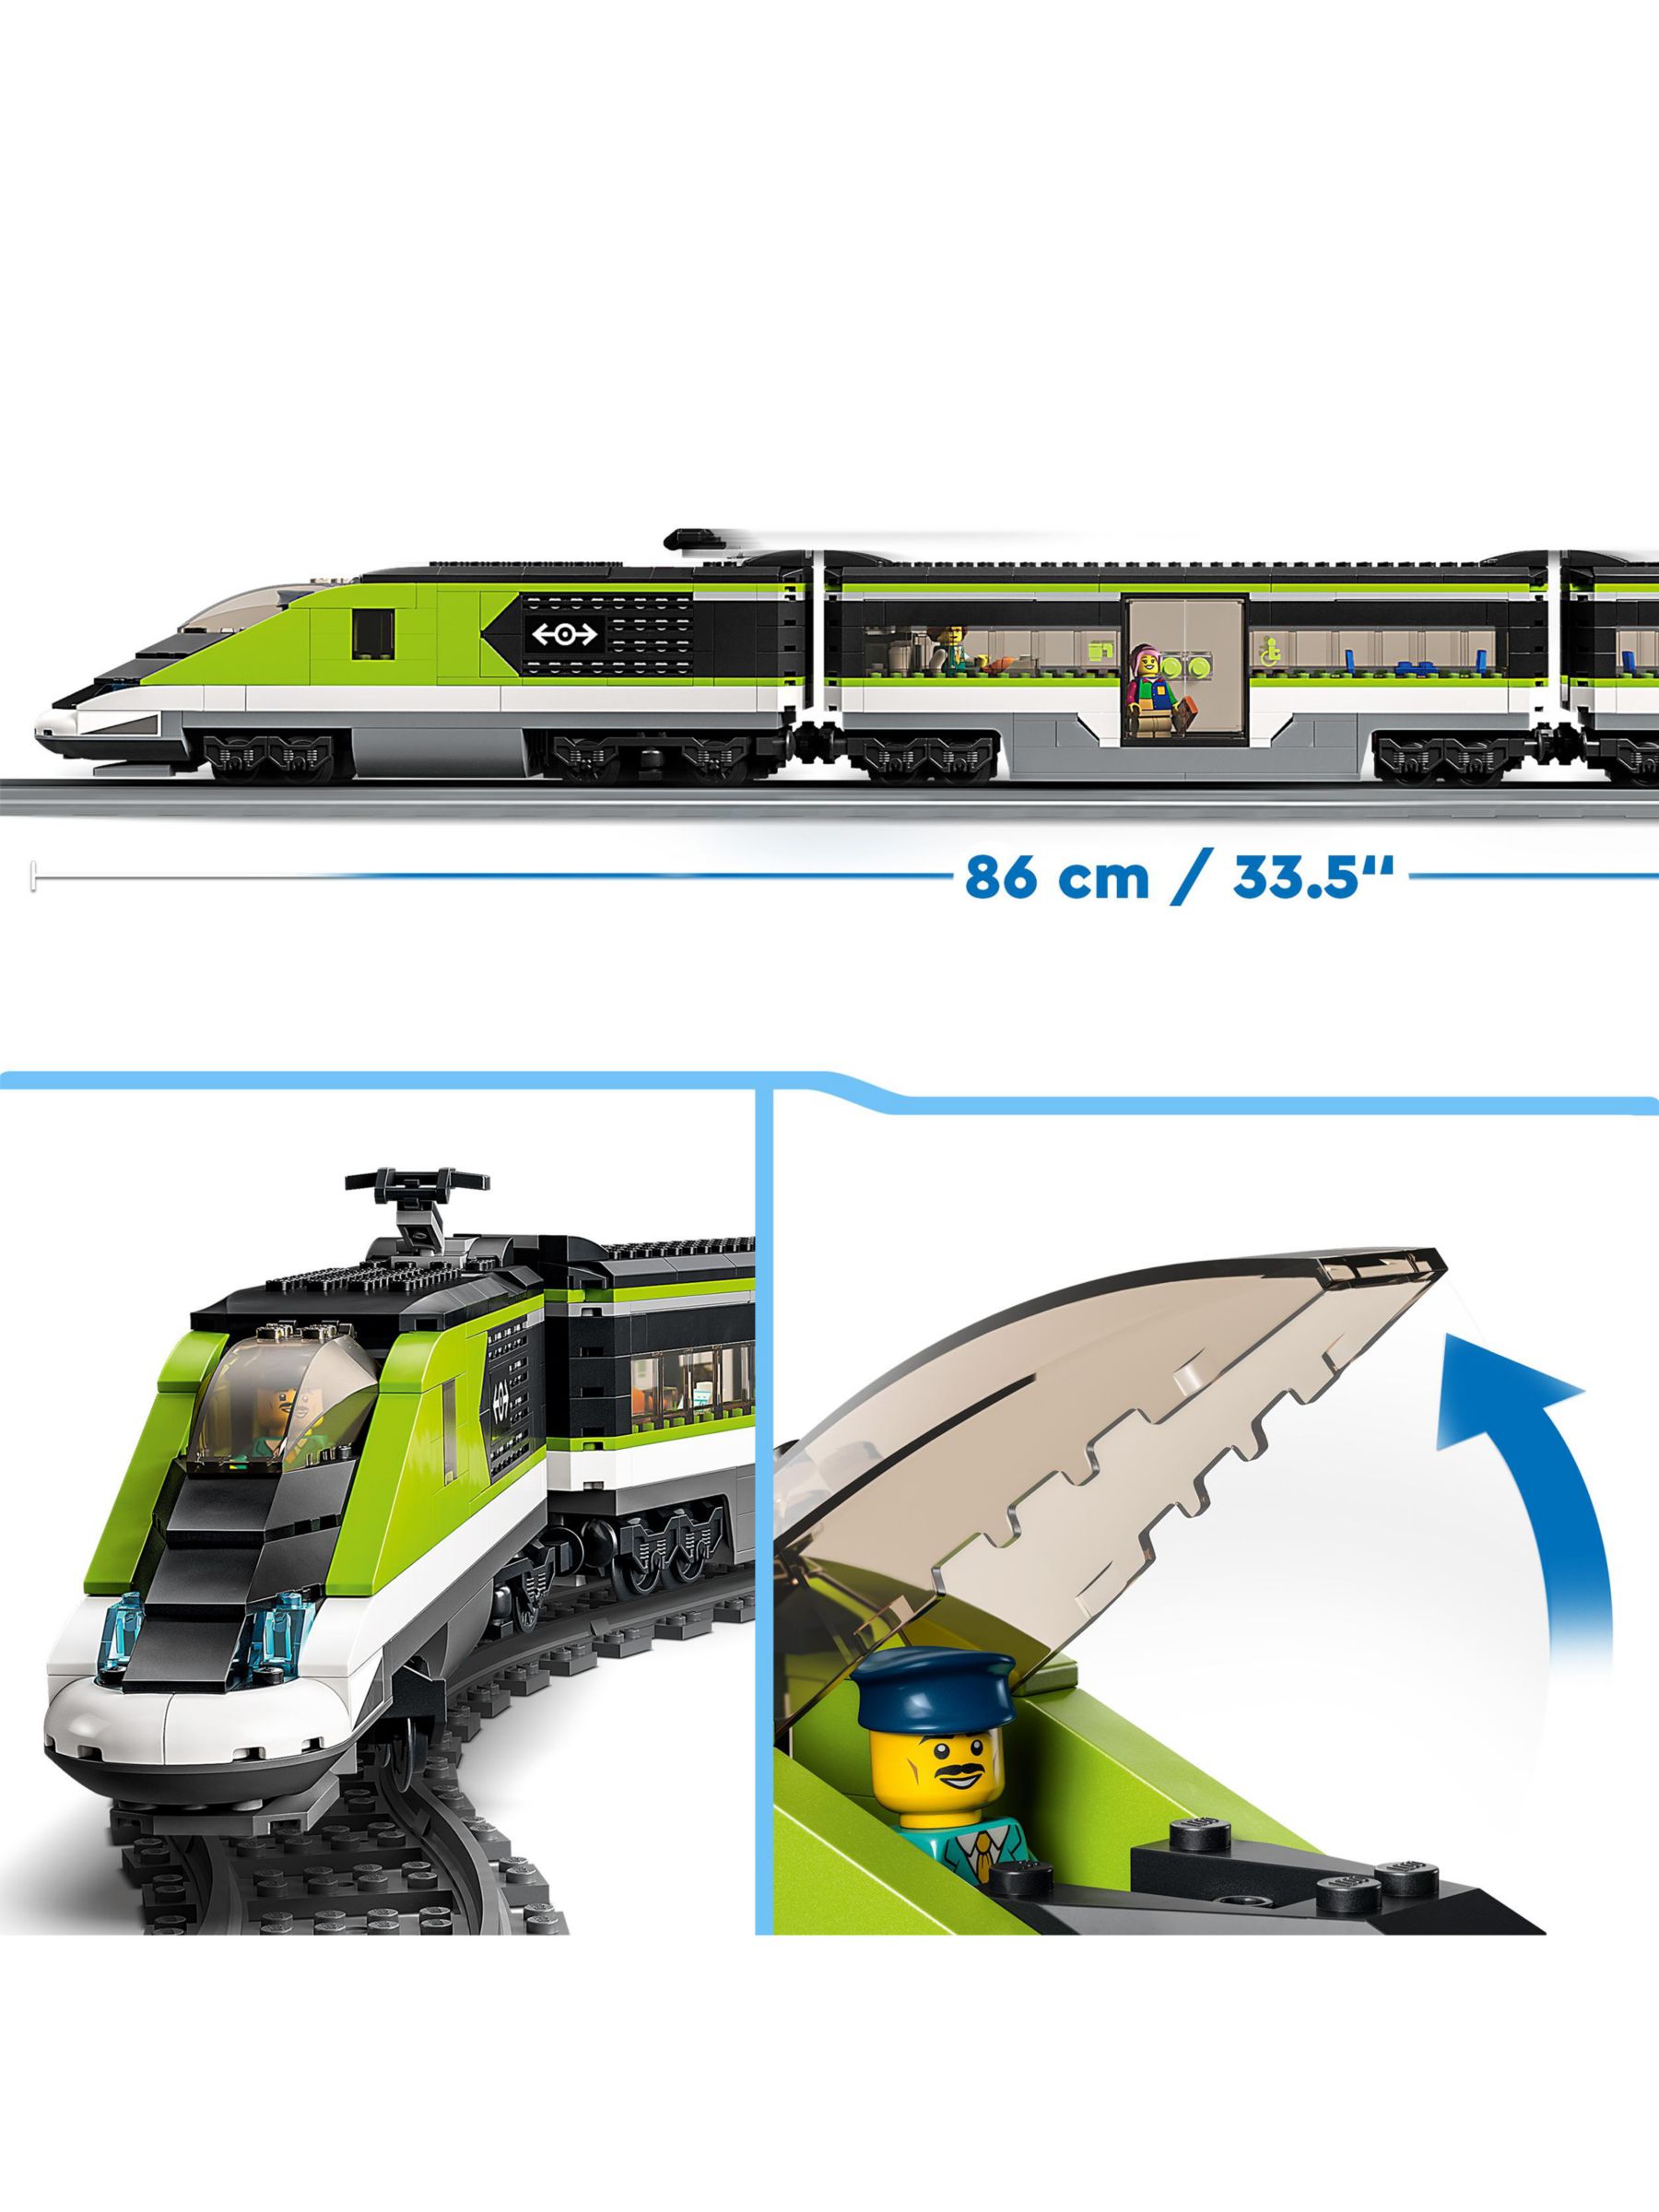 LEGO City 60337 Le Train de Voyageurs Express